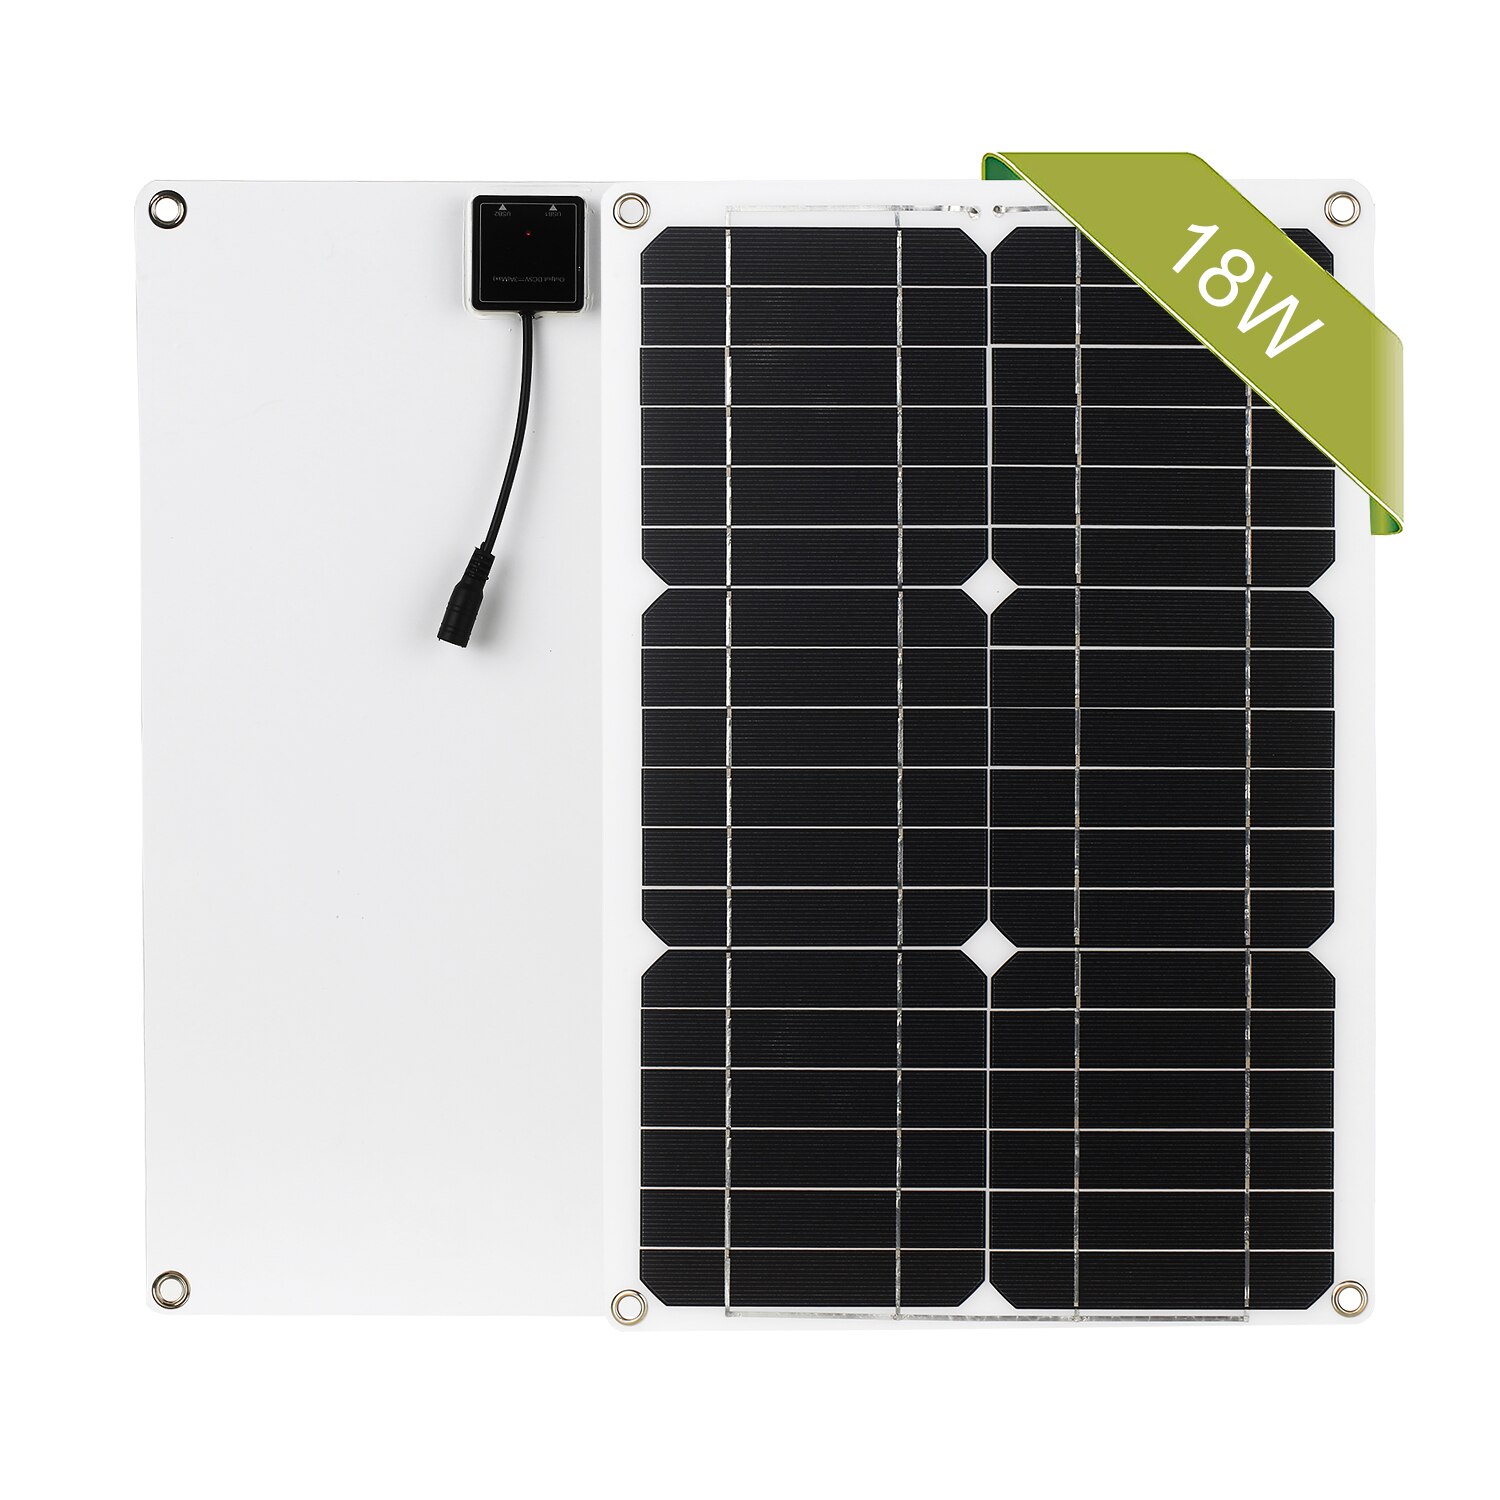 18w 12v solpanelsæt fra gittermonokrystallinsk modul med solopladningsregulator sae-forbindelseskabelsæt: Dobbelt-usb ingen con